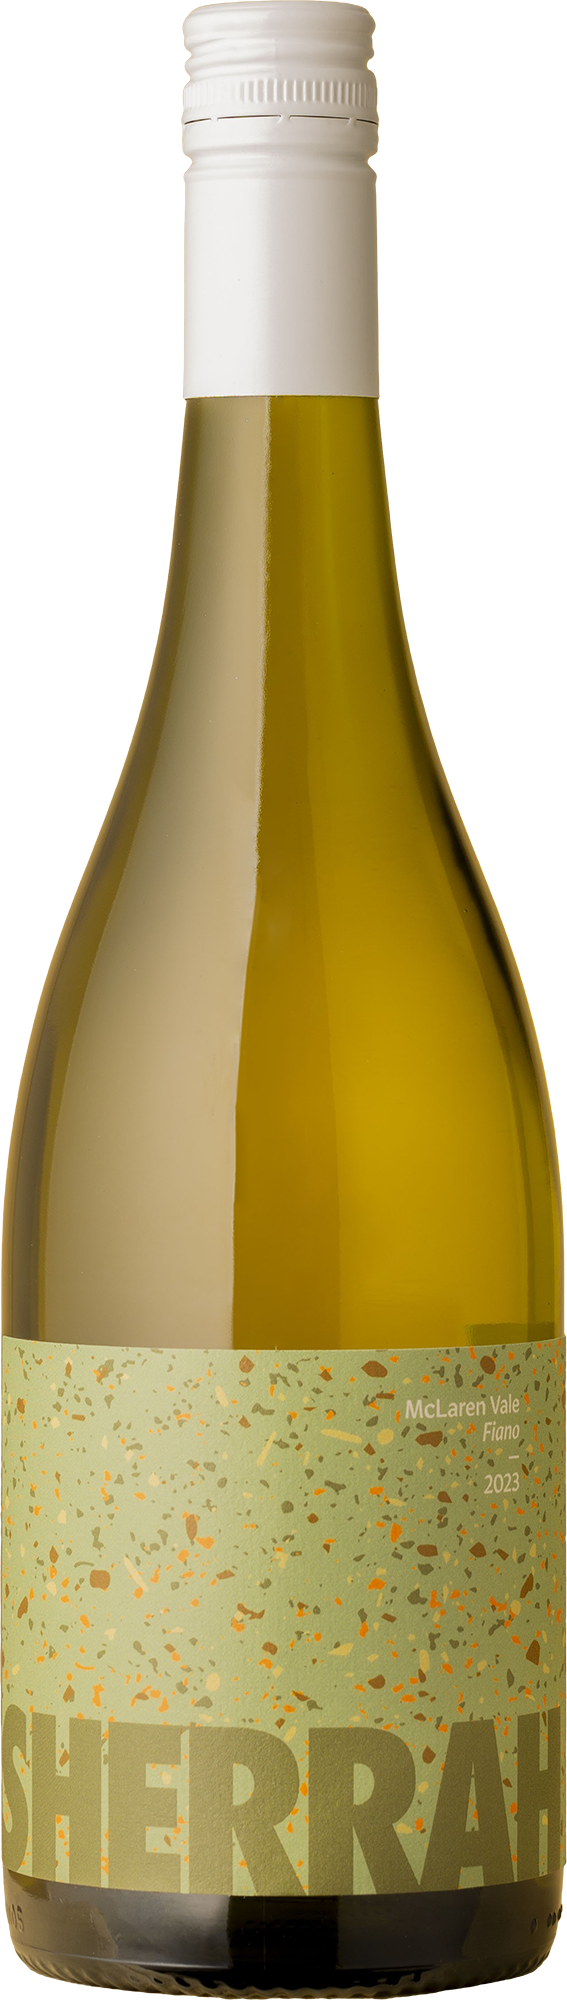 Sherrah - Fiano 2023 White Wine